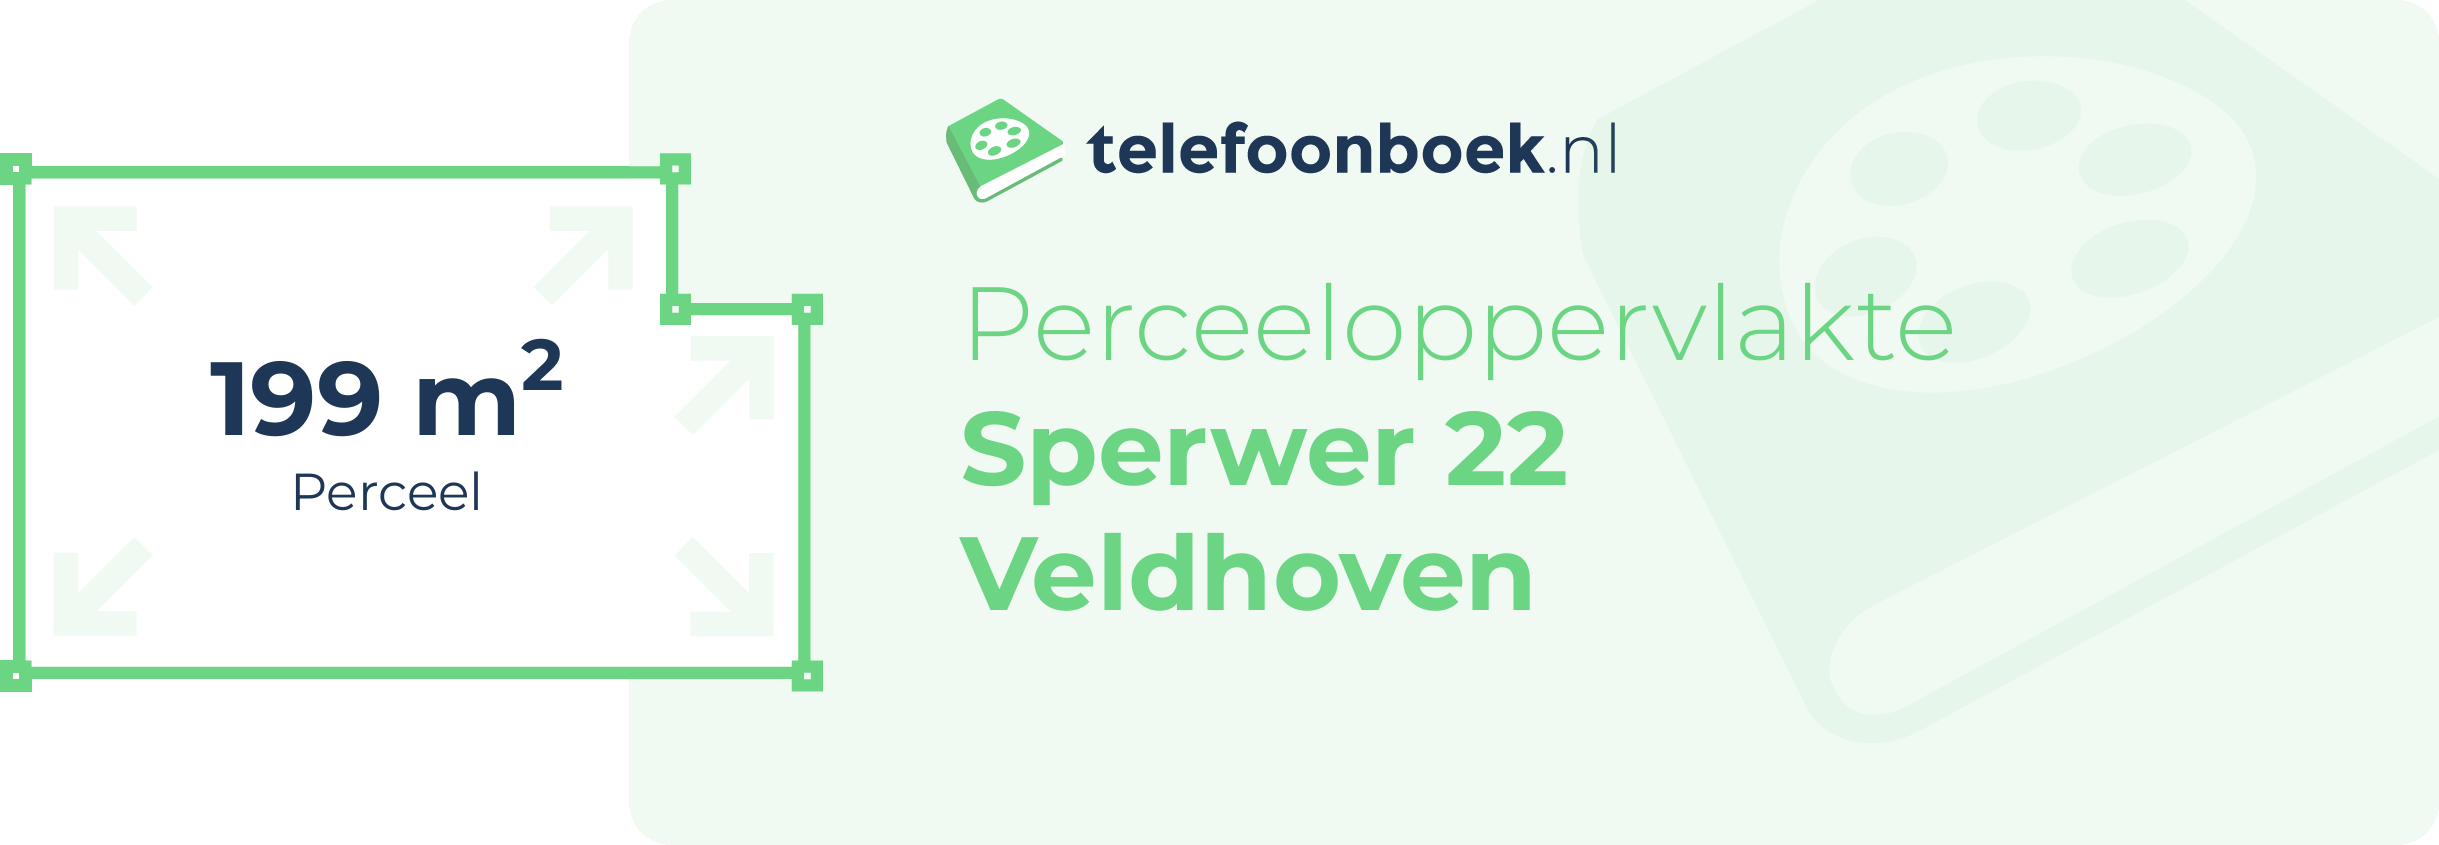 Perceeloppervlakte Sperwer 22 Veldhoven